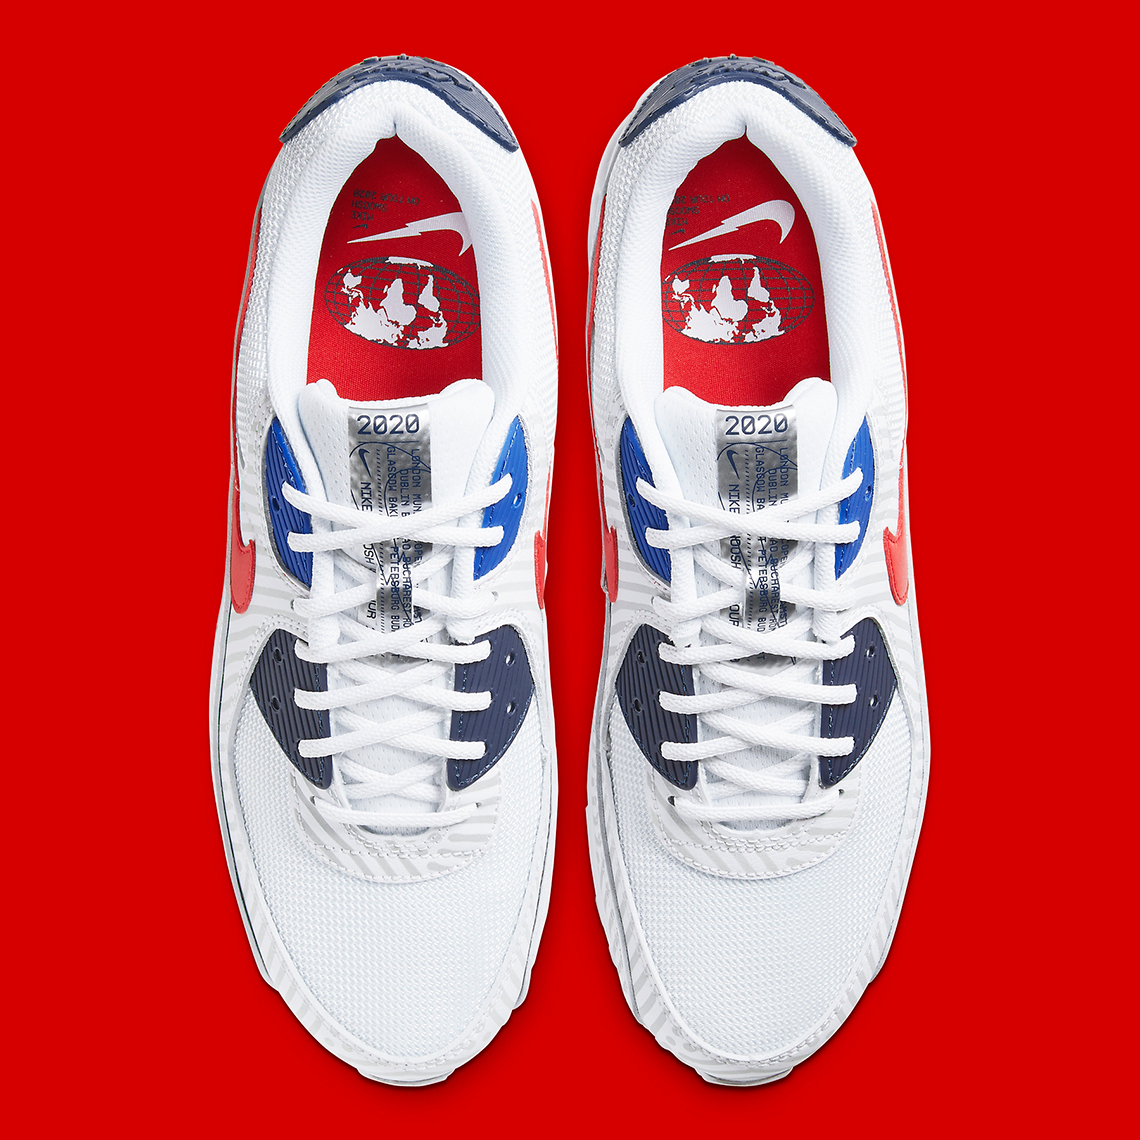 جديد كيم Nike Air Max 90 Euro Tour CW7574-100 Release Info | SneakerNews.com جديد كيم